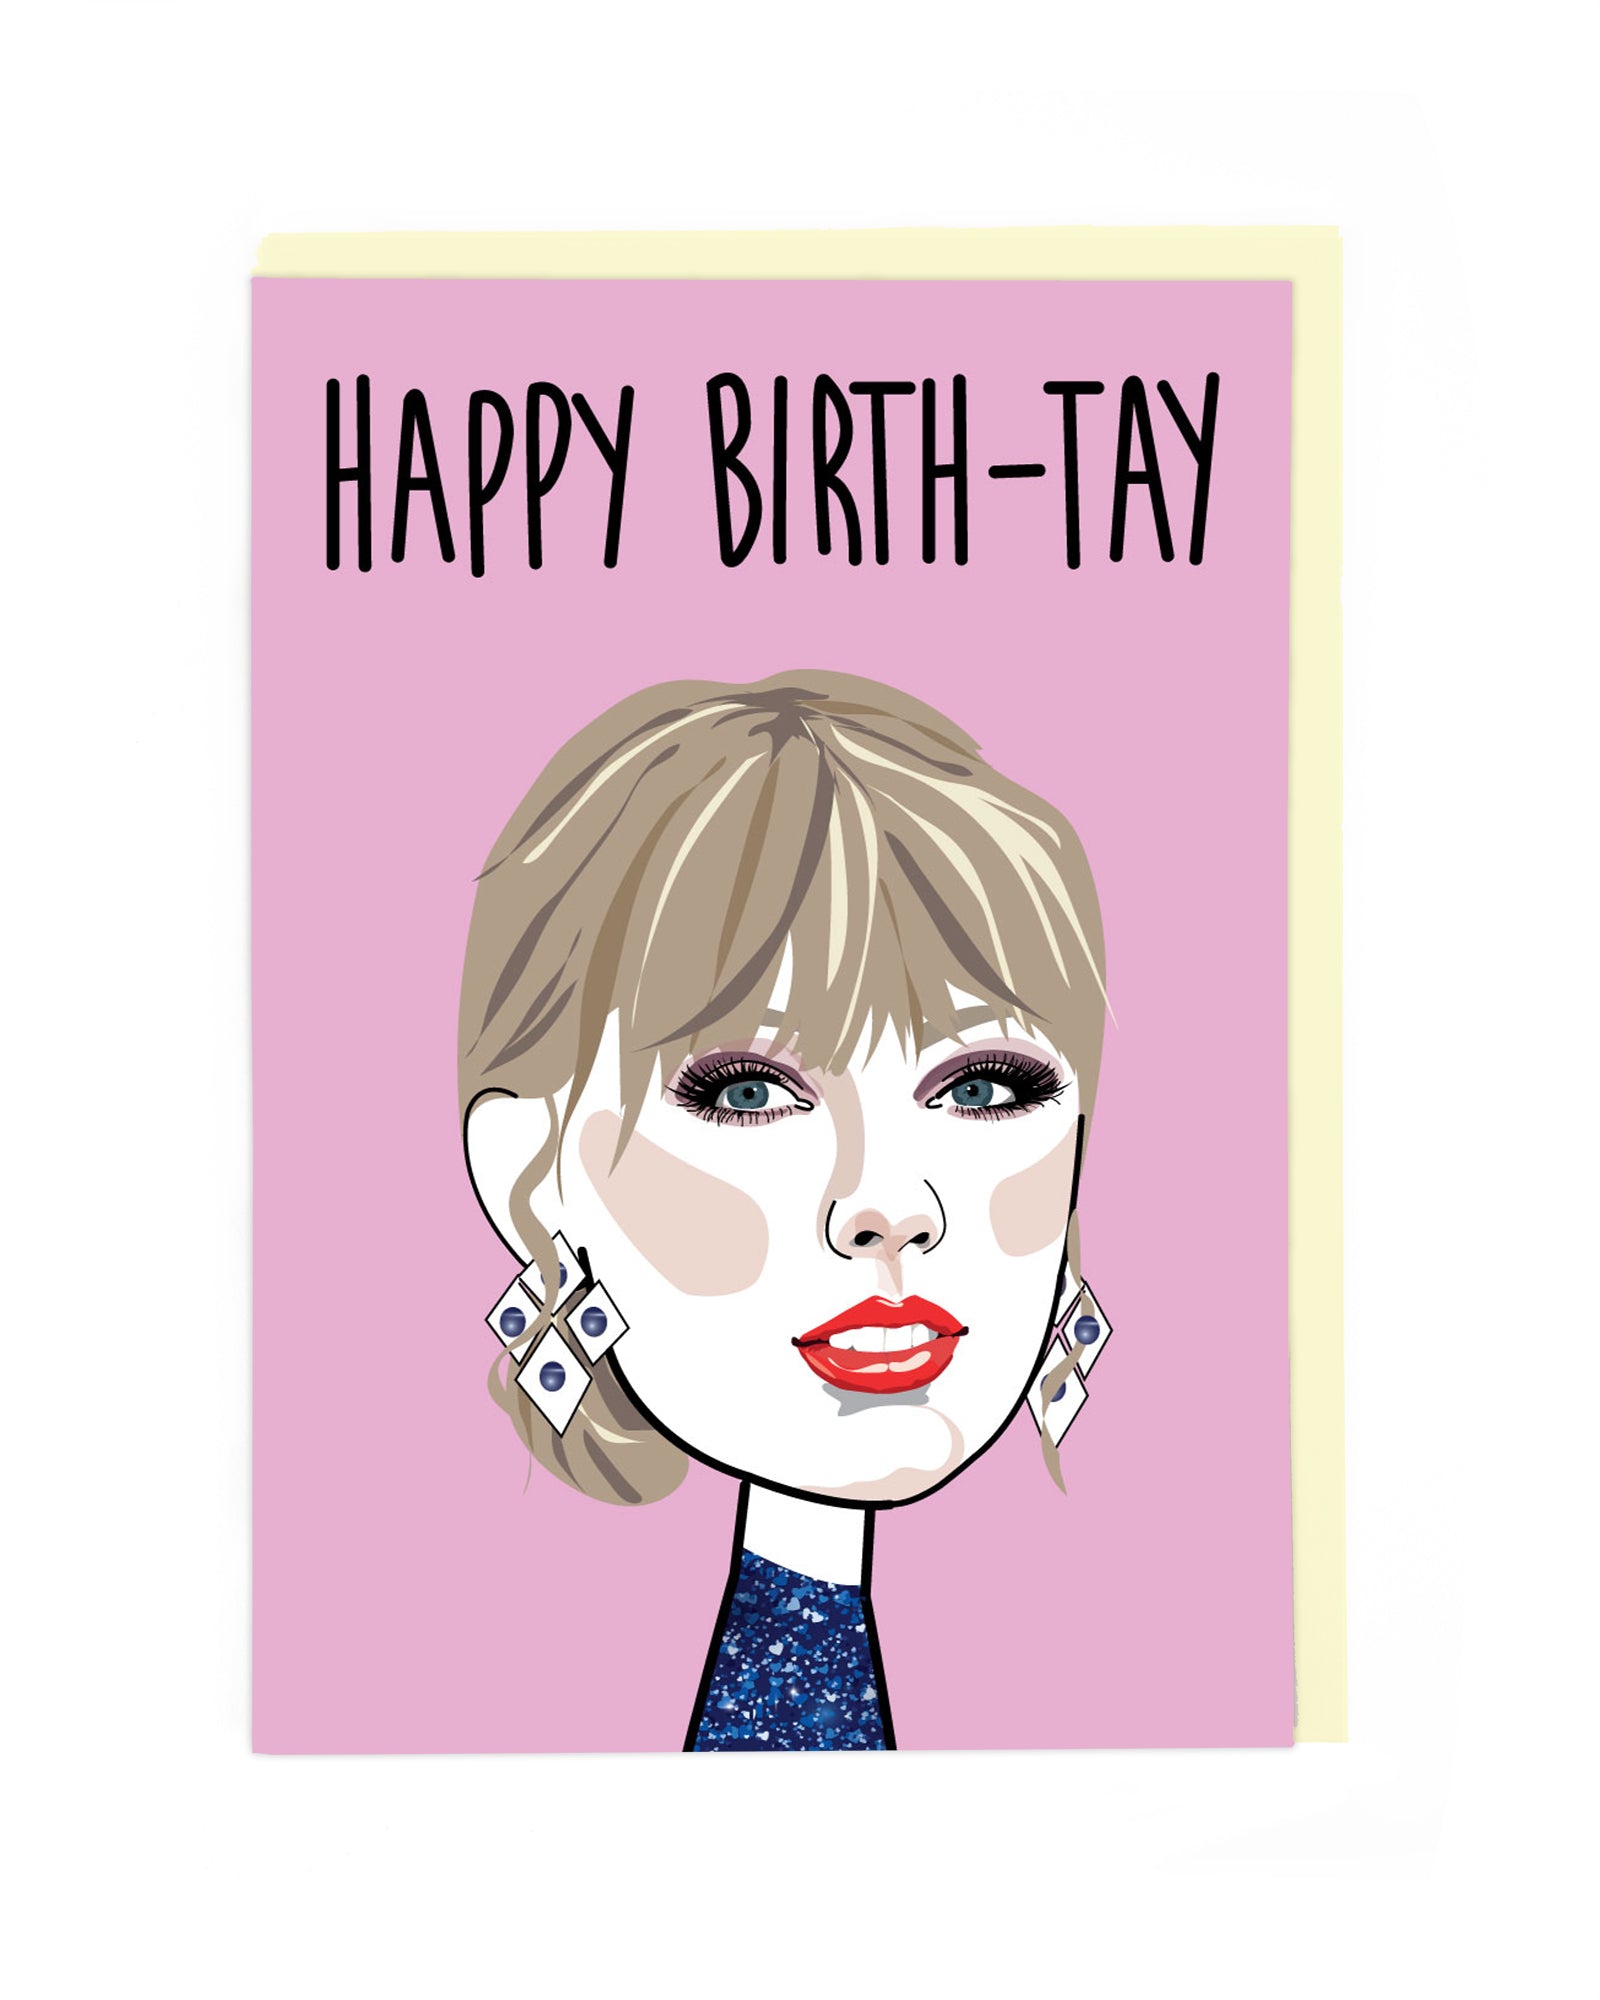 Happy Birth-Tay Swiftie Card by penny black